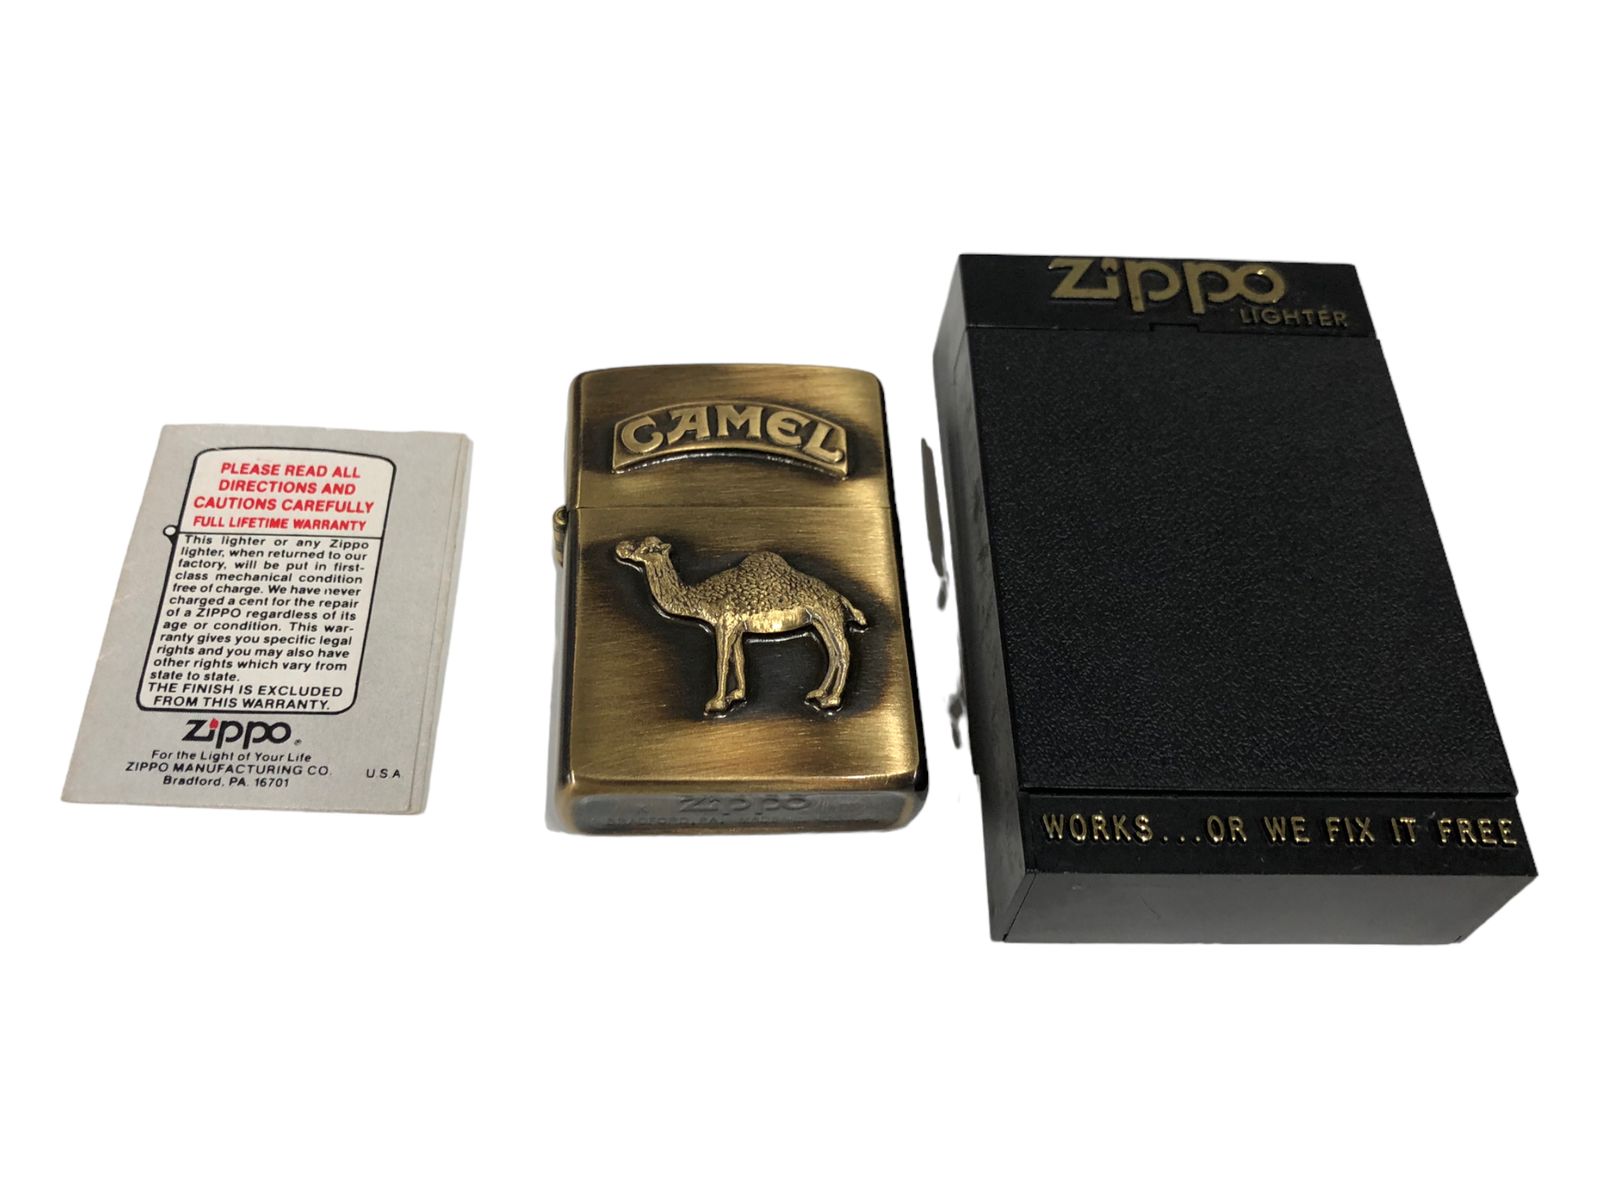 得価正規店ZIPPO 『CAMEL キャメル』1993年9月製造 ラクダ 砂漠 オイルライター ジッポ 廃版激レア たばこメーカー